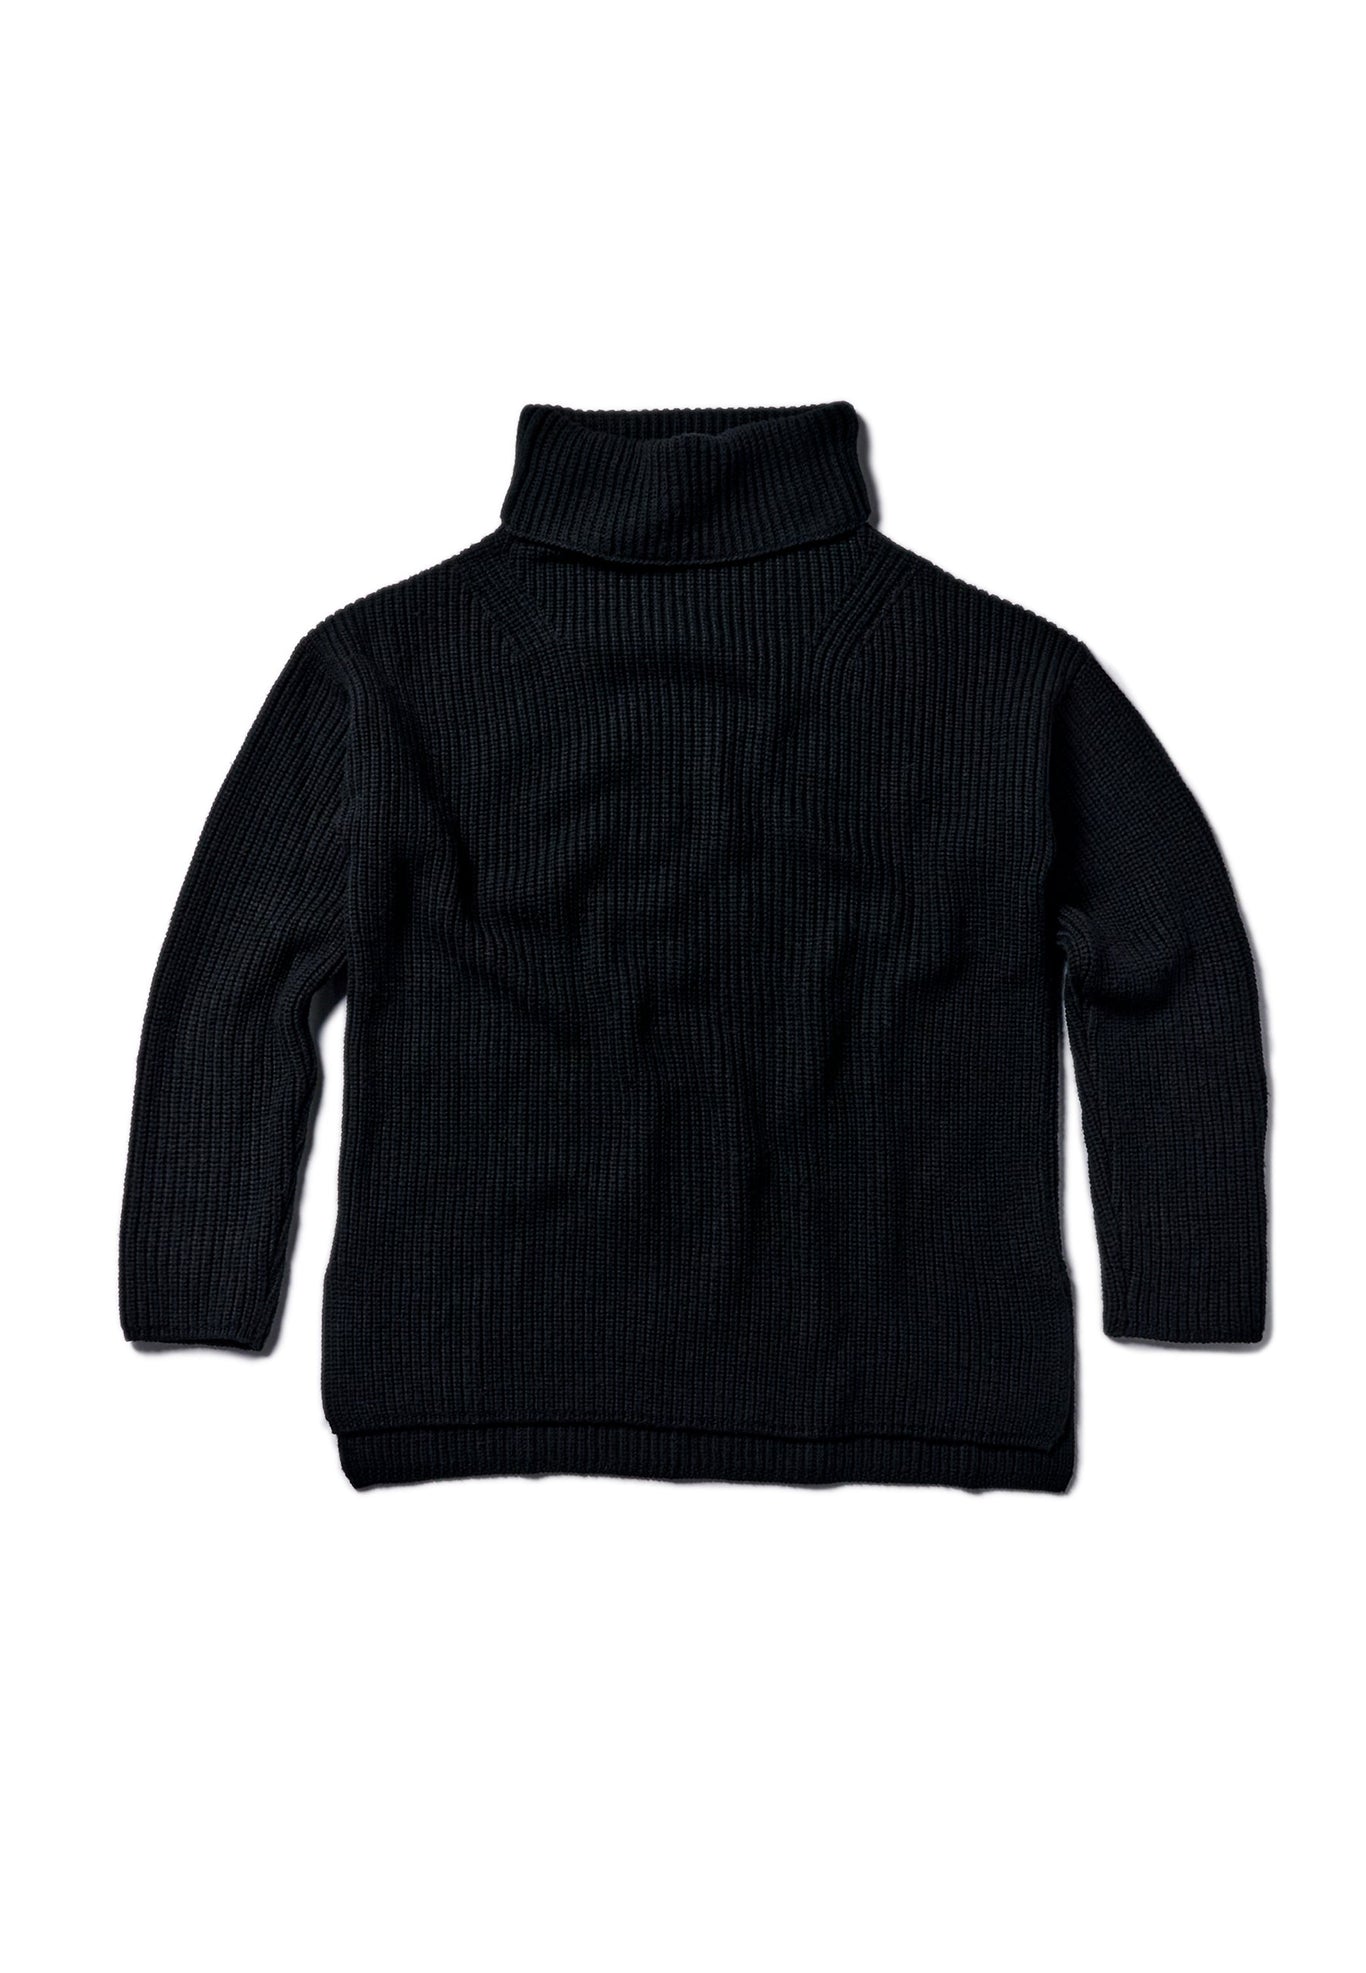 Rhea Black Heavy Roll Neck Sweater